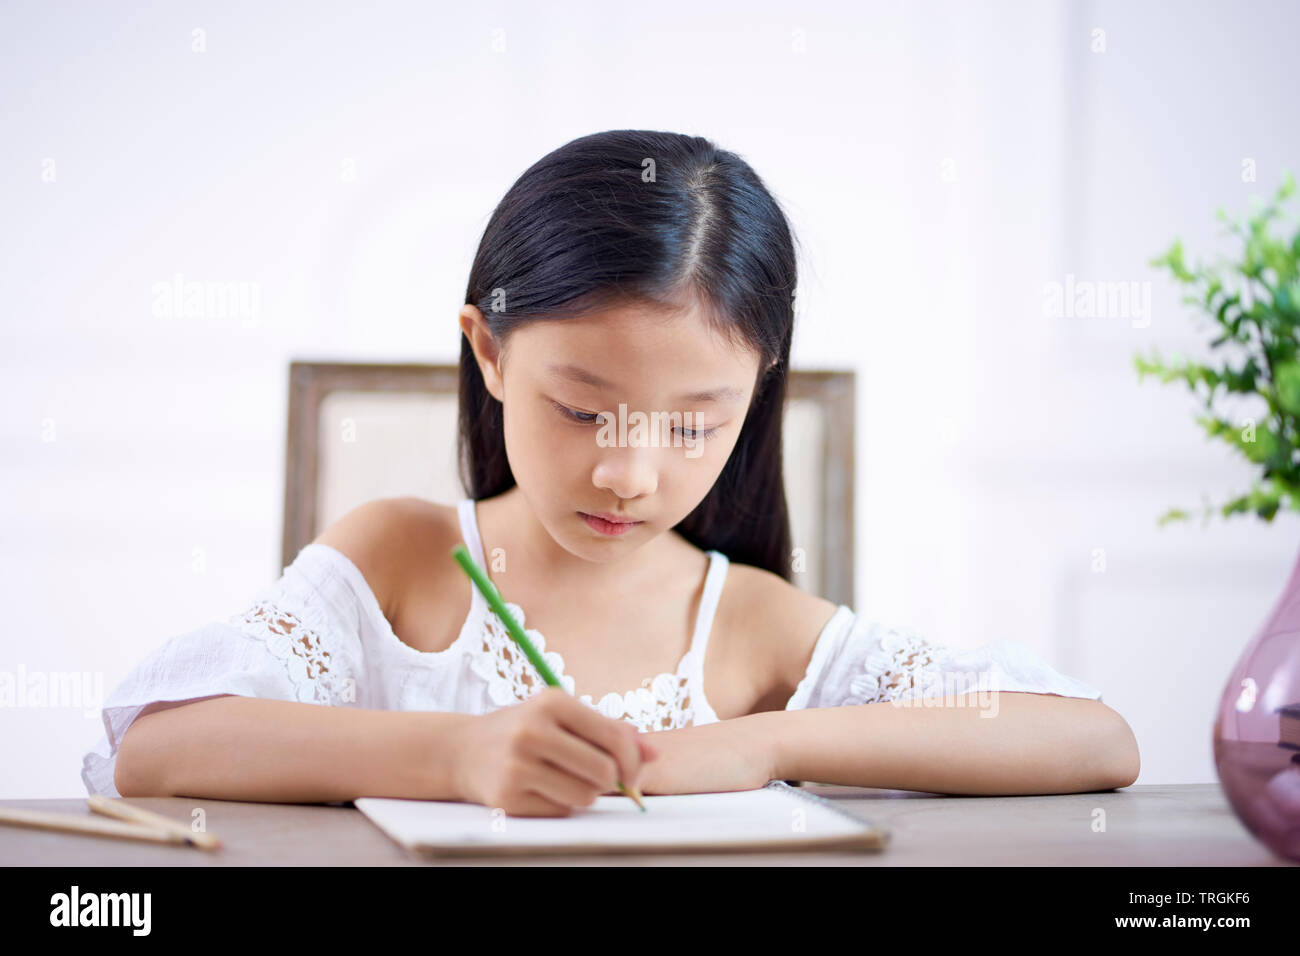 Bella ragazza asiatica con lunghi capelli neri seduto alla scrivania in camera sua di scrittura o di disegno su note book Foto Stock